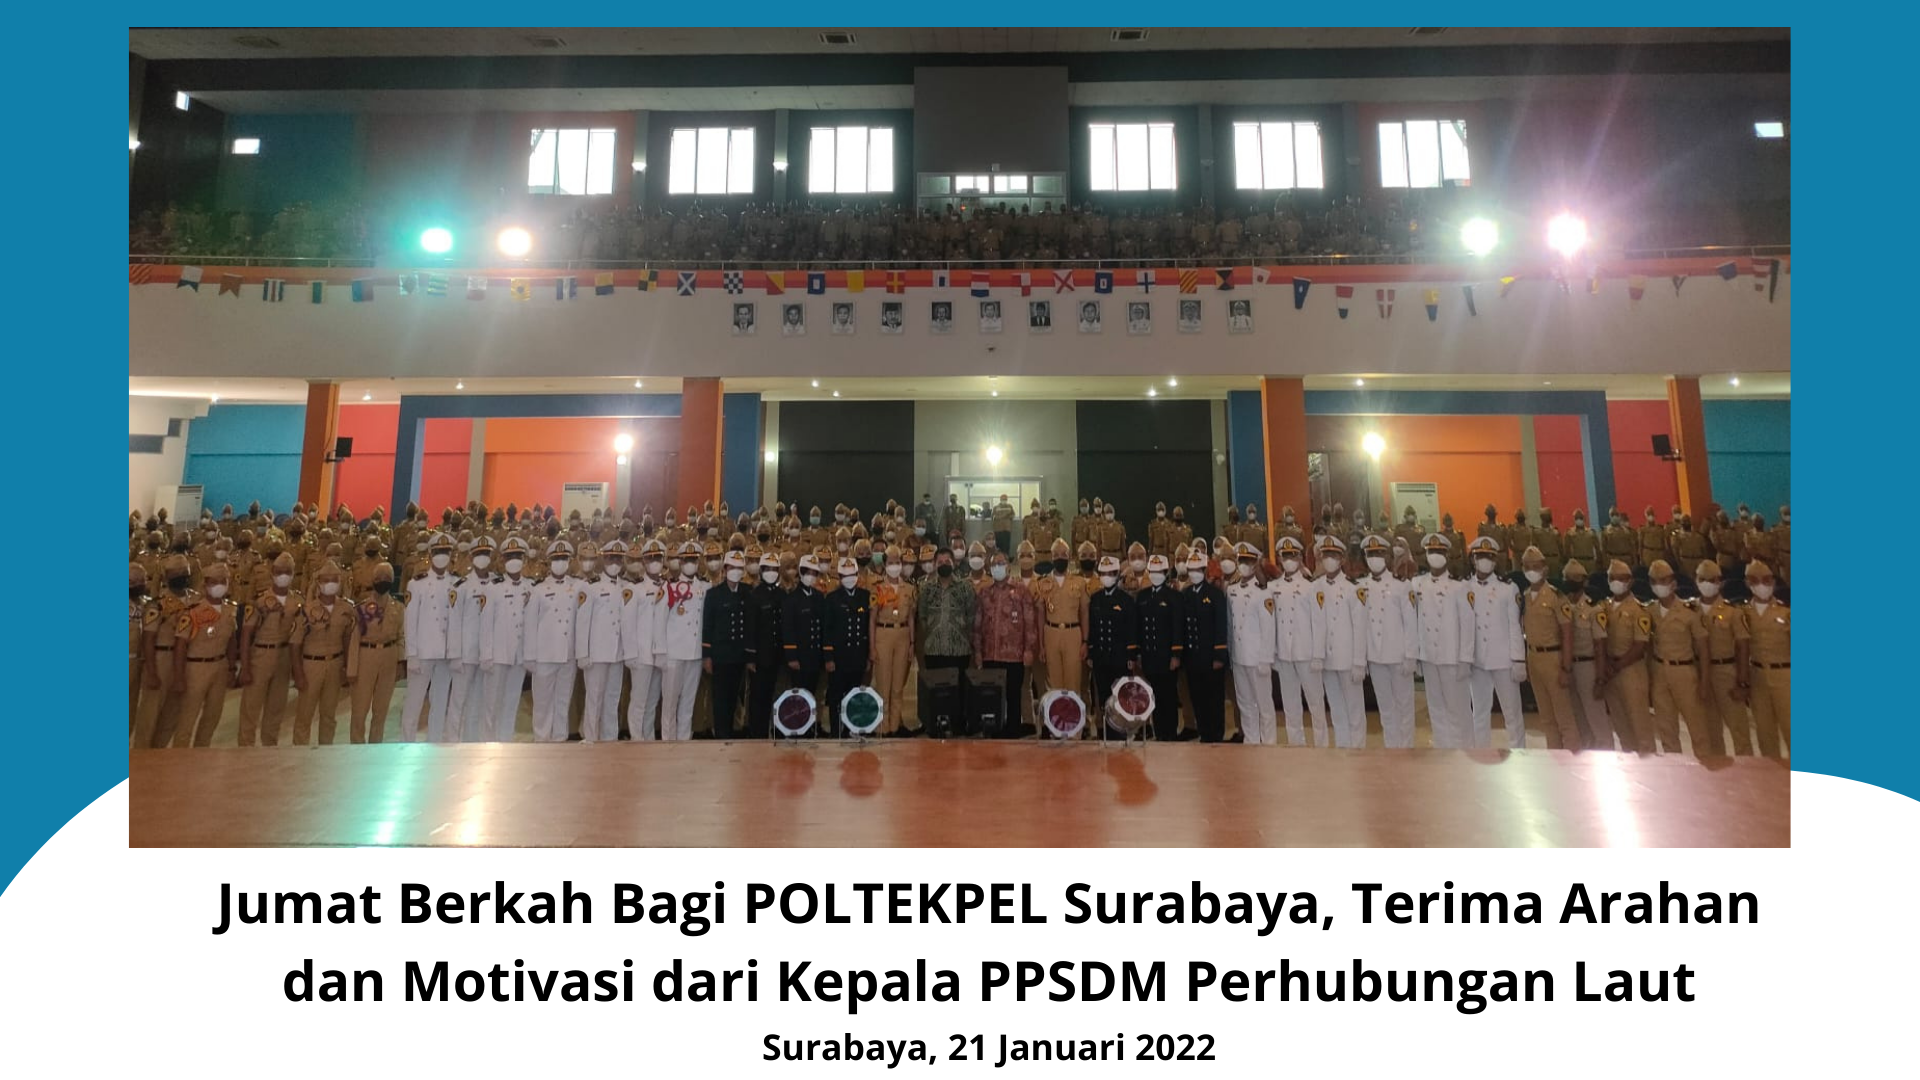 Jumat Berkah Bagi POLTEKPEL Surabaya, Terima Arahan dan Motivasi dari Kepala PPSDM Perhubungan Laut